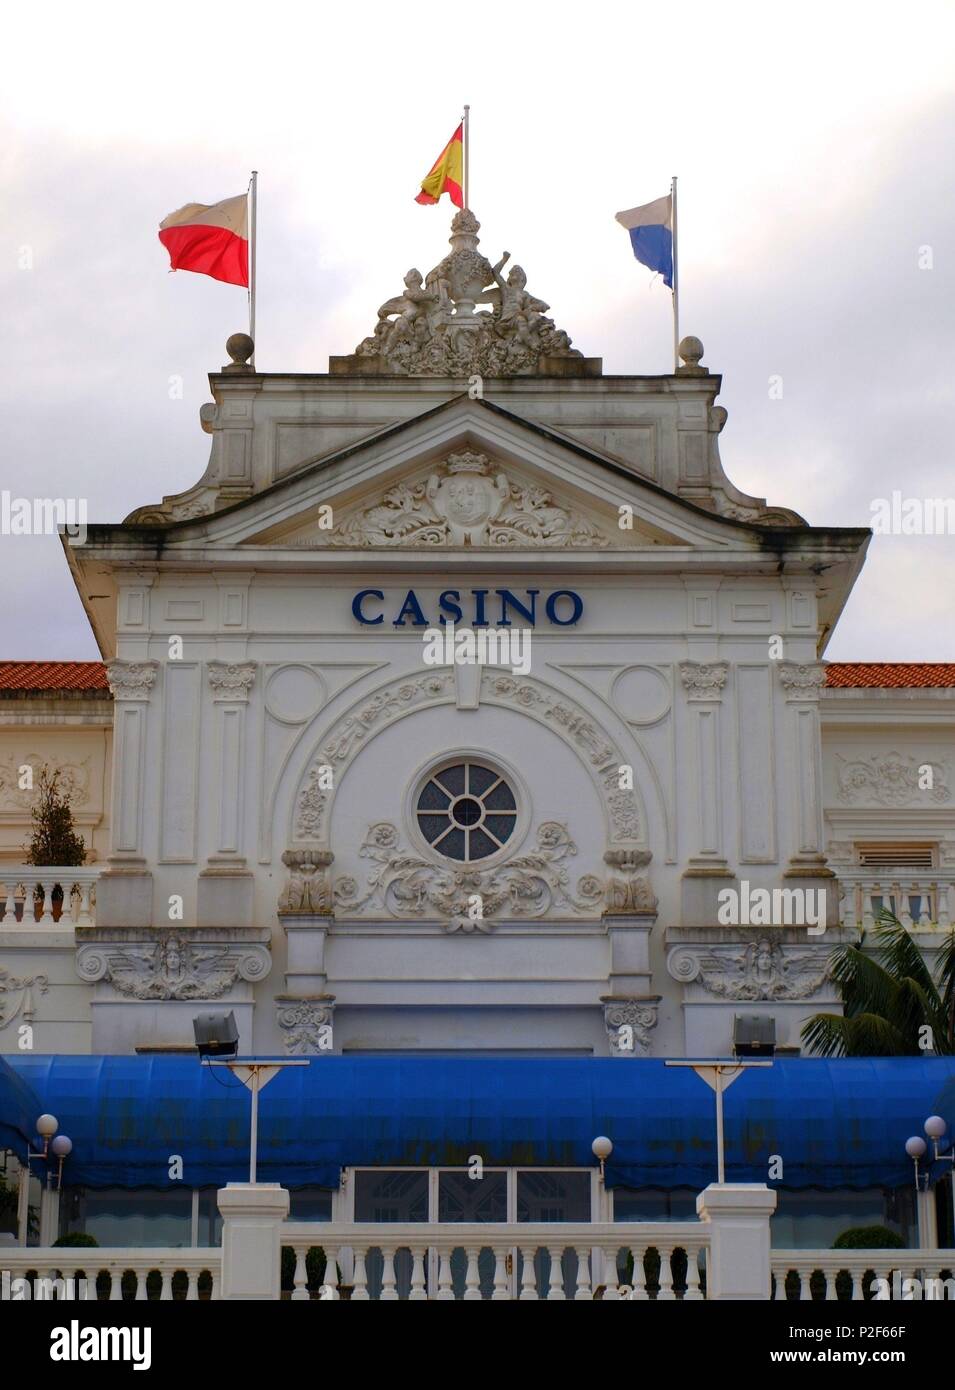 Gran Casino, construido en 1916 por el arquitecto Eloy Mart' nez del Valle, estilo renacentista neo, Plaza de Italia, Zona del Sardinero, Santander. Foto Stock